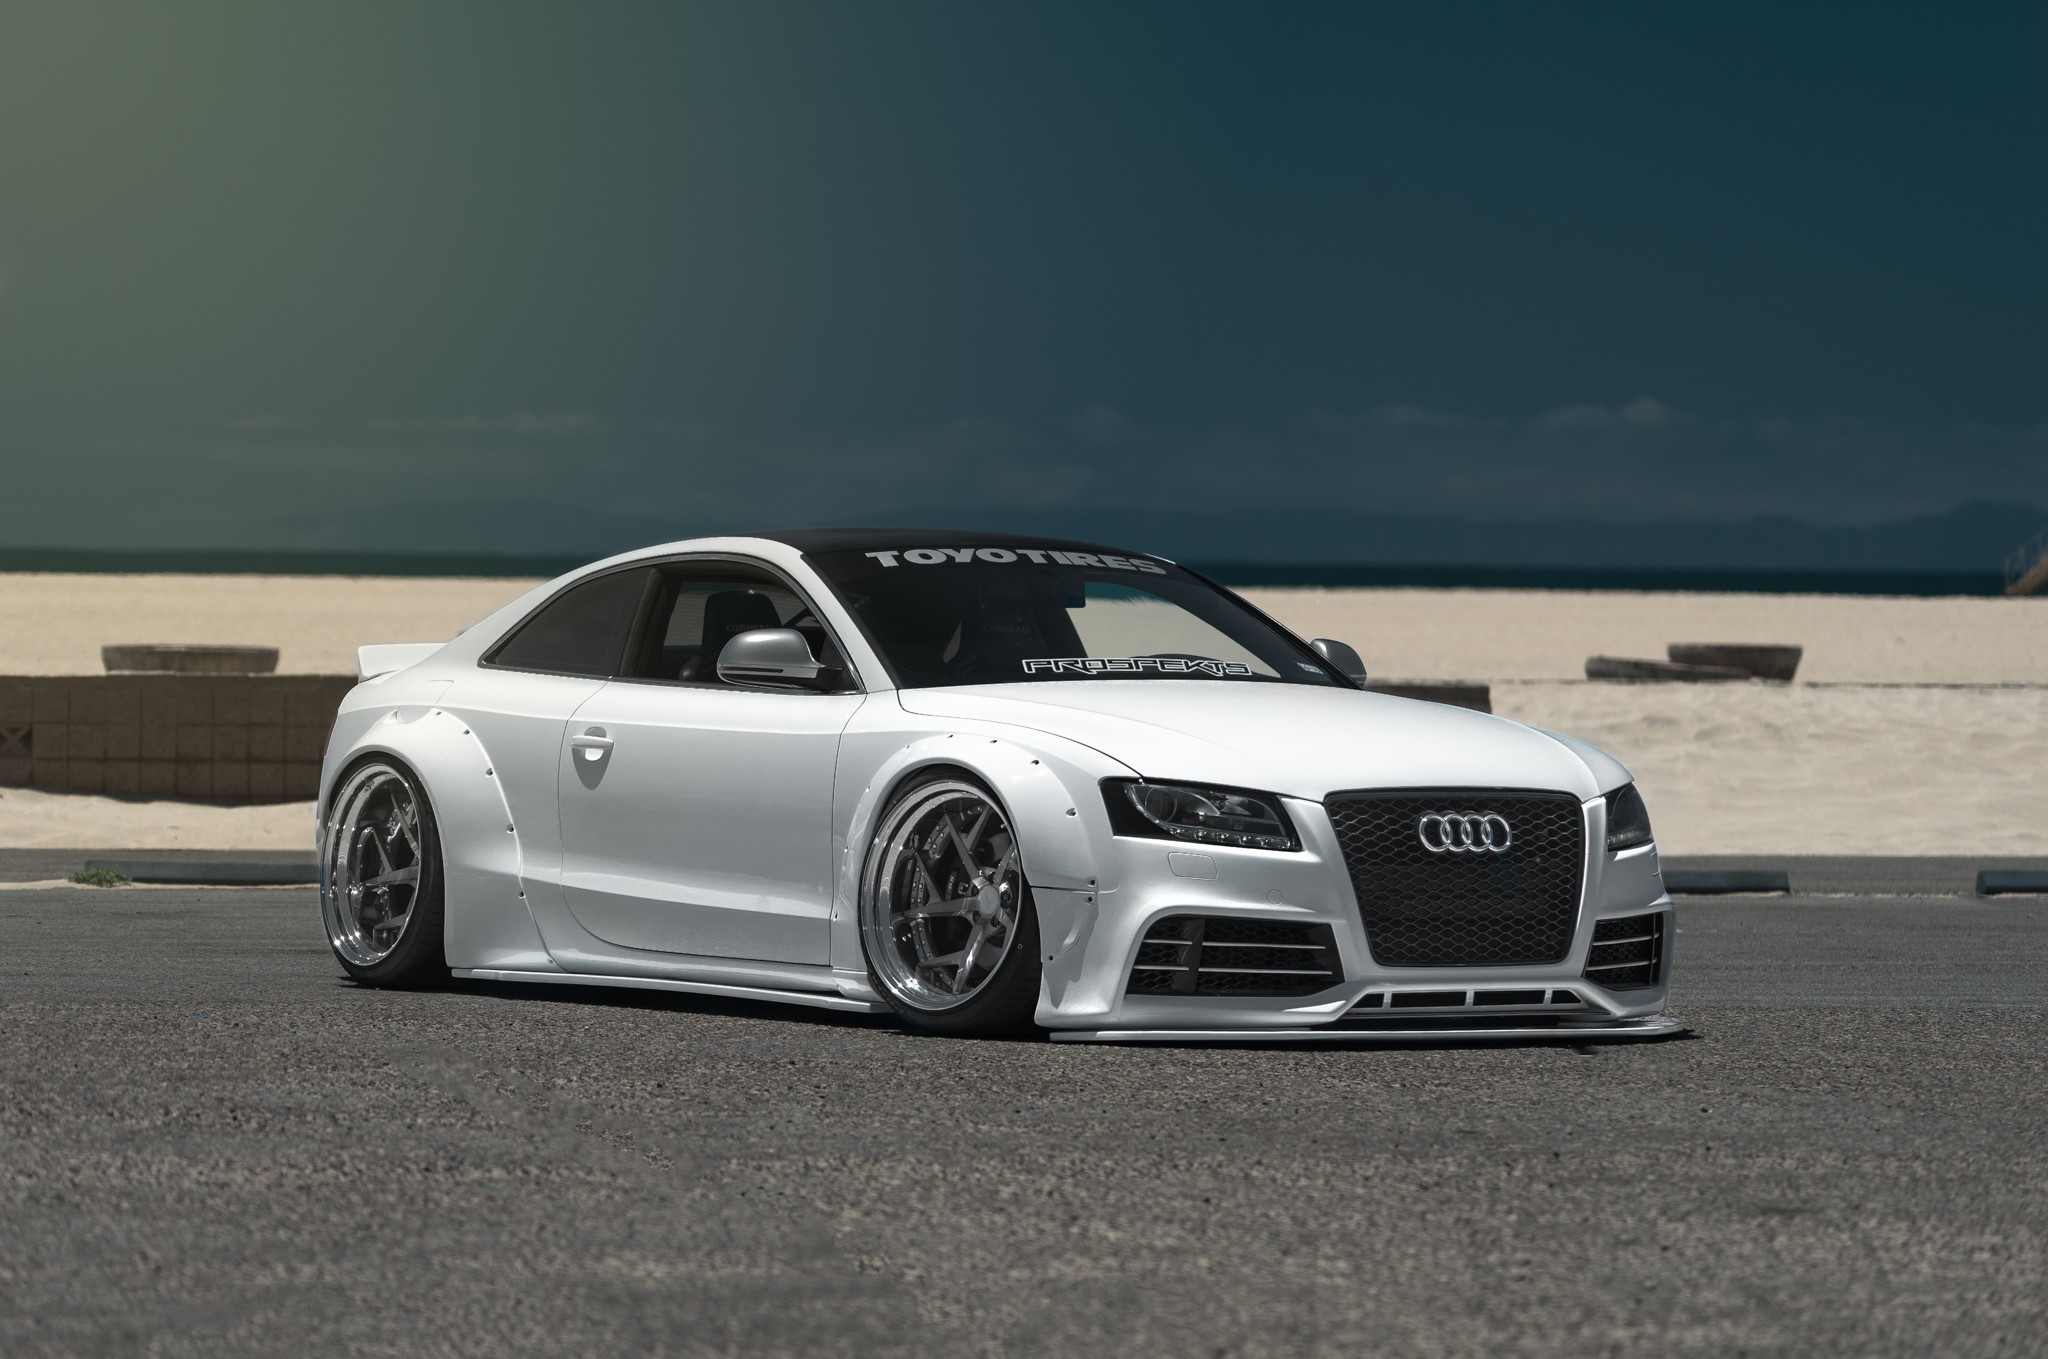 Audi S5 Wallpaper Cars Better